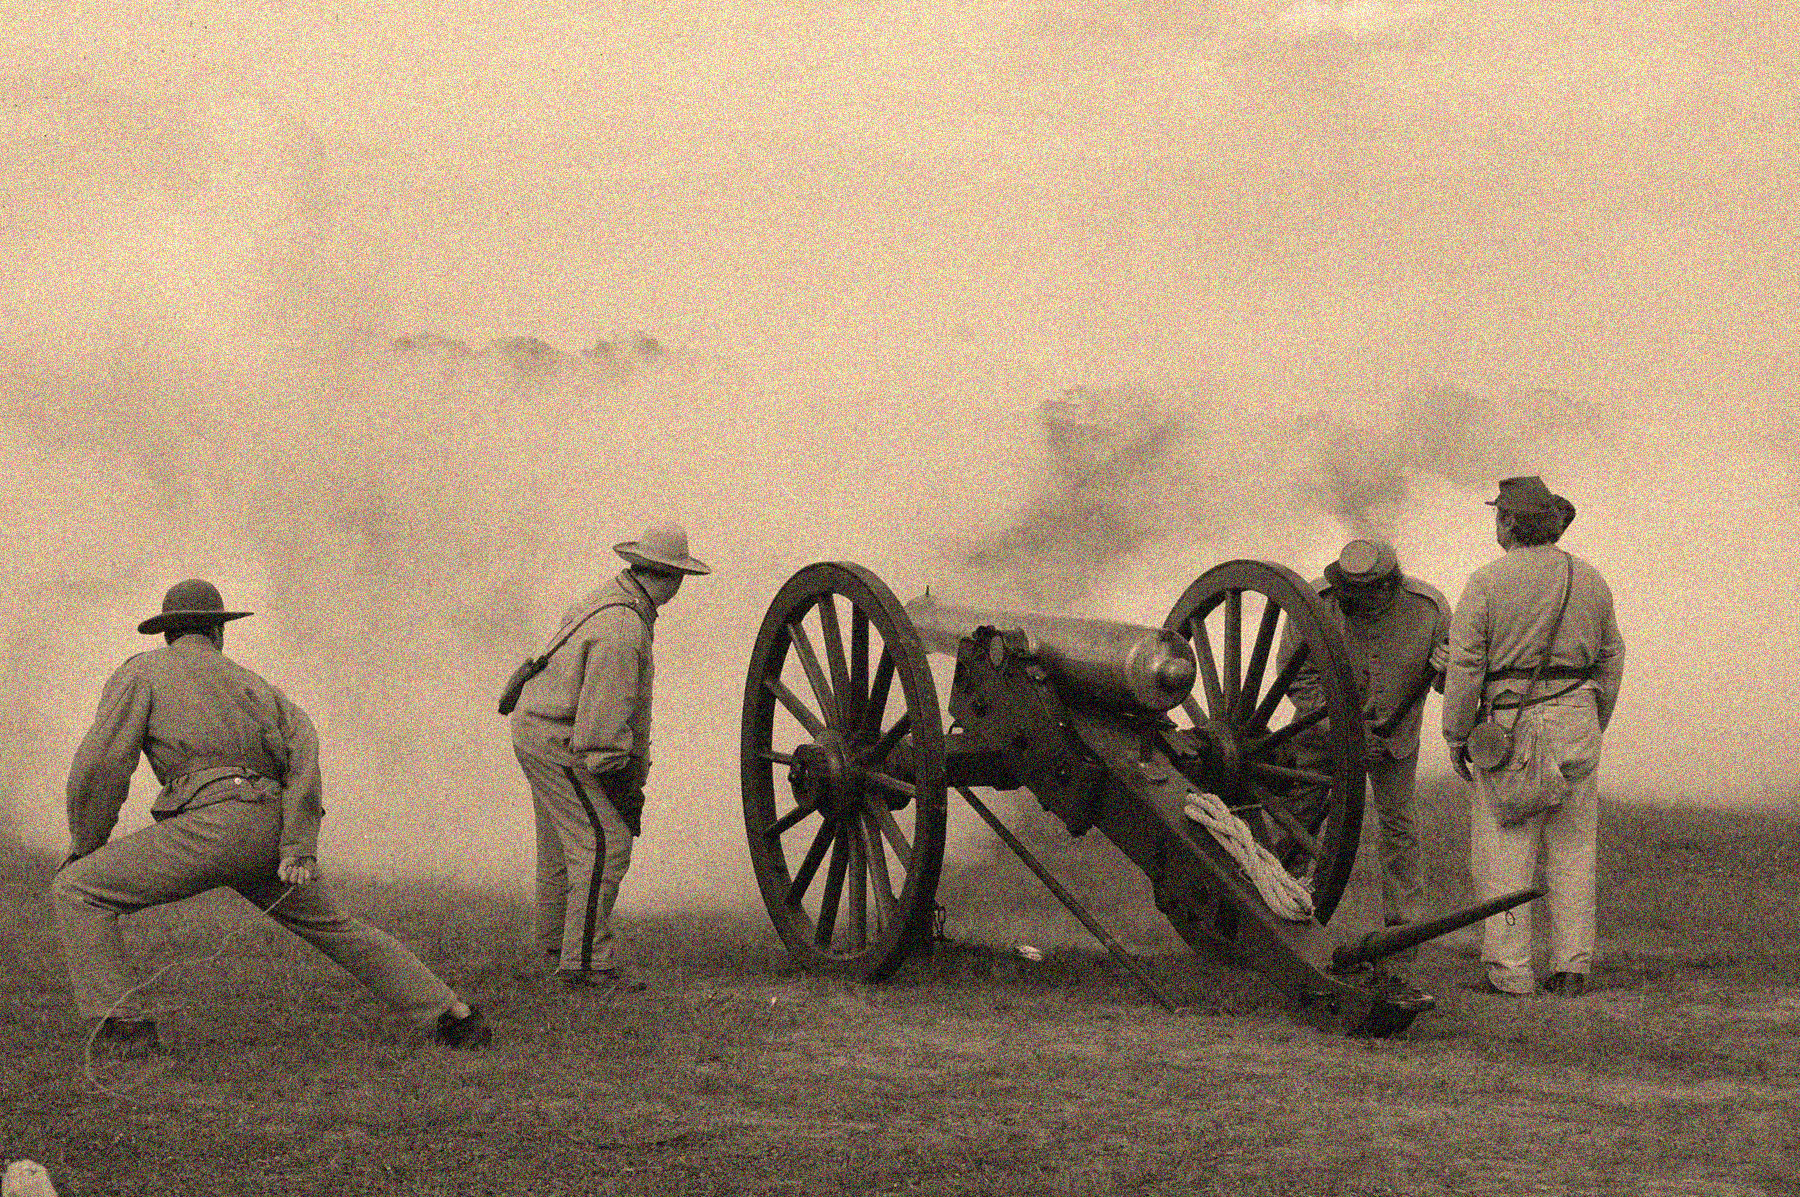 Joe Dobrow photo of cannon at Antietam 150th anniversary